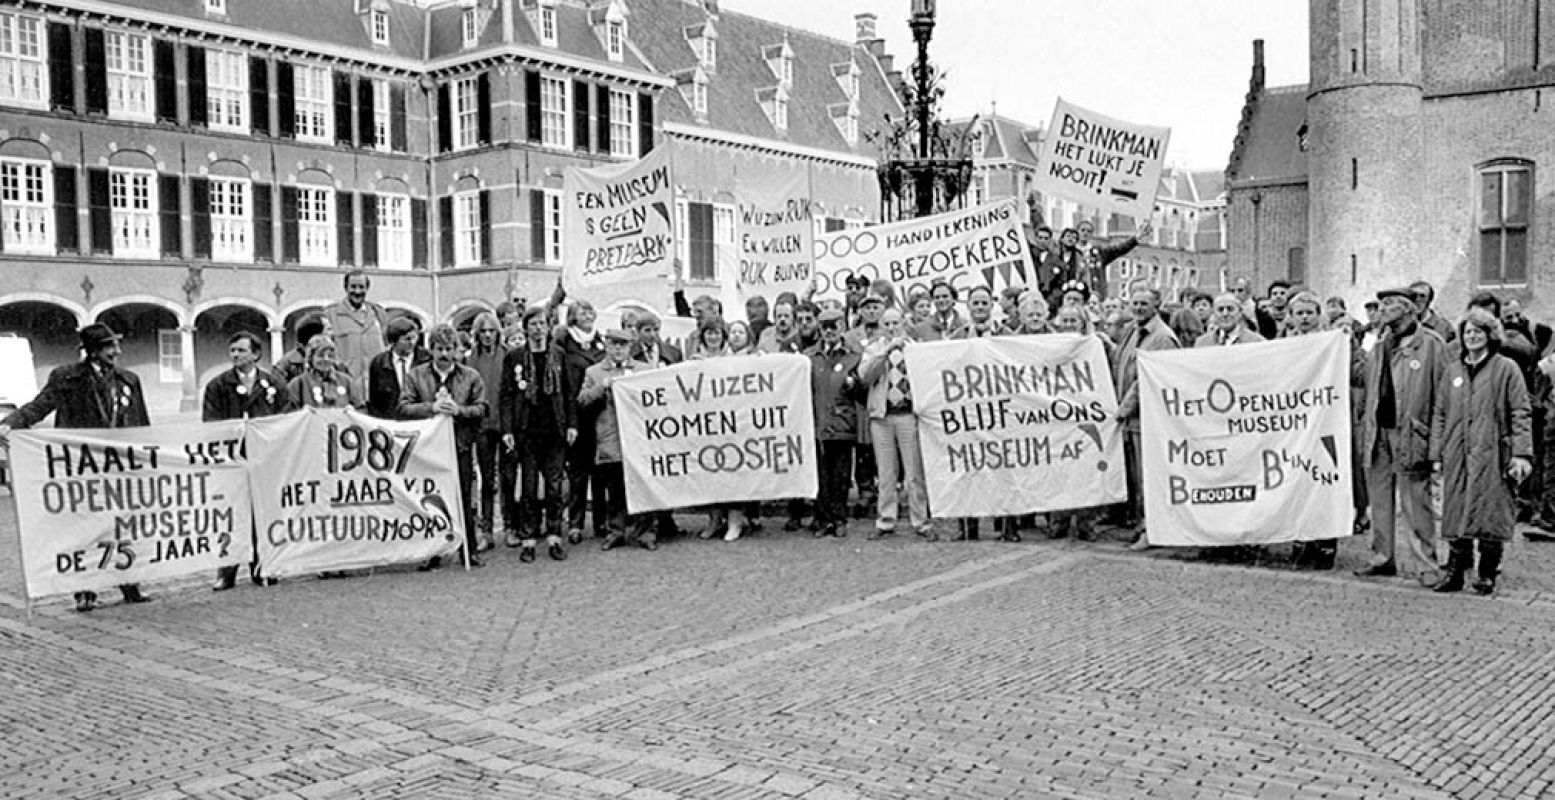 Protestactie in februari 1987 van medewerkers van het Nederlands Openluchtmuseum op het Binnenhof wegens voorgenomen sluiting van het museum. Foto: Nederlands Openluchtmuseum.